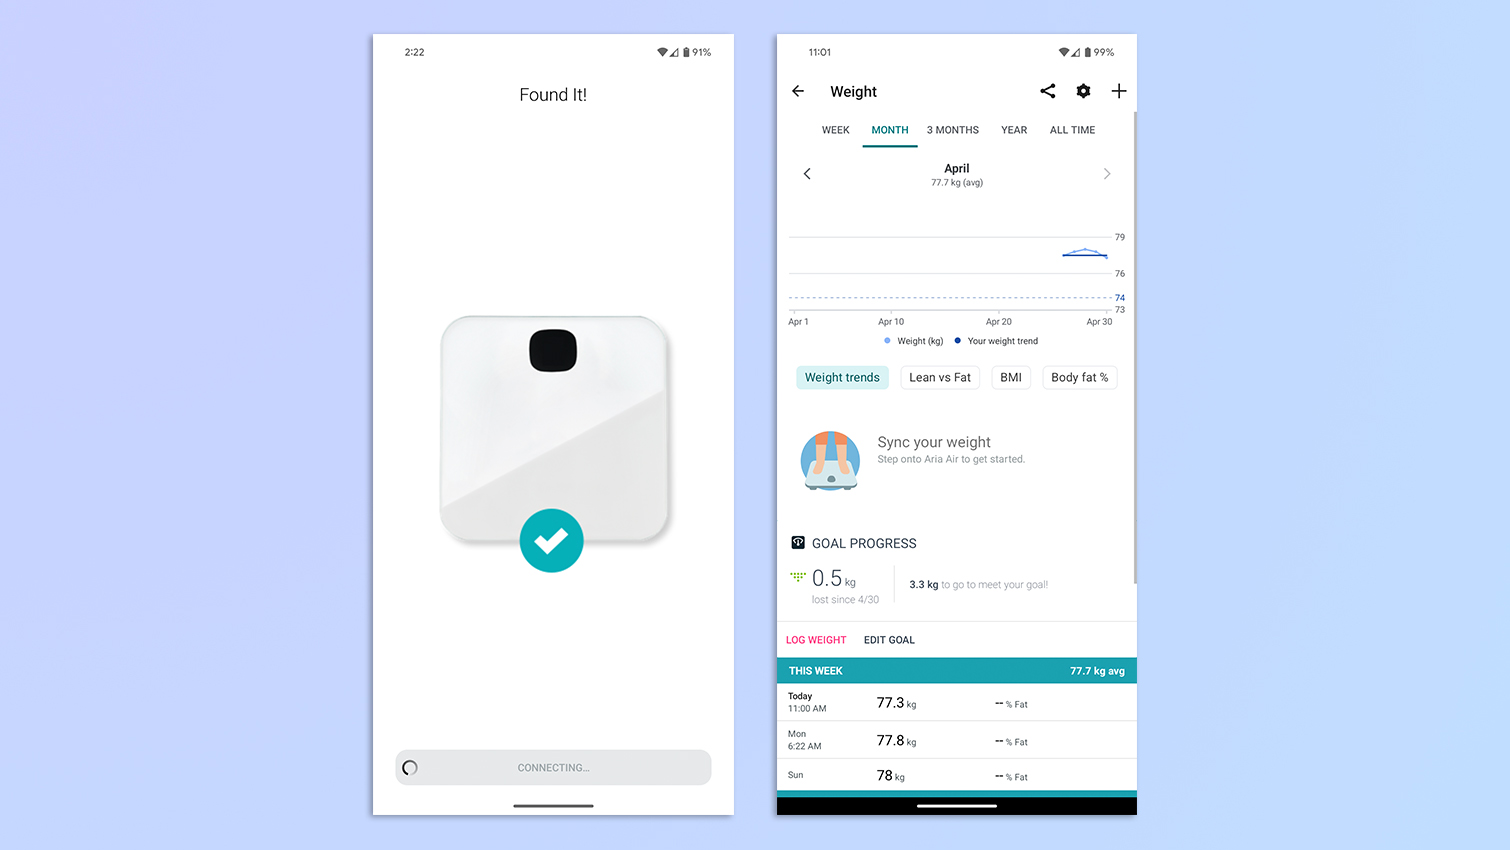 Android'de Fitbit uygulamasını gösteren ekran görüntülerinin bir derlemesi